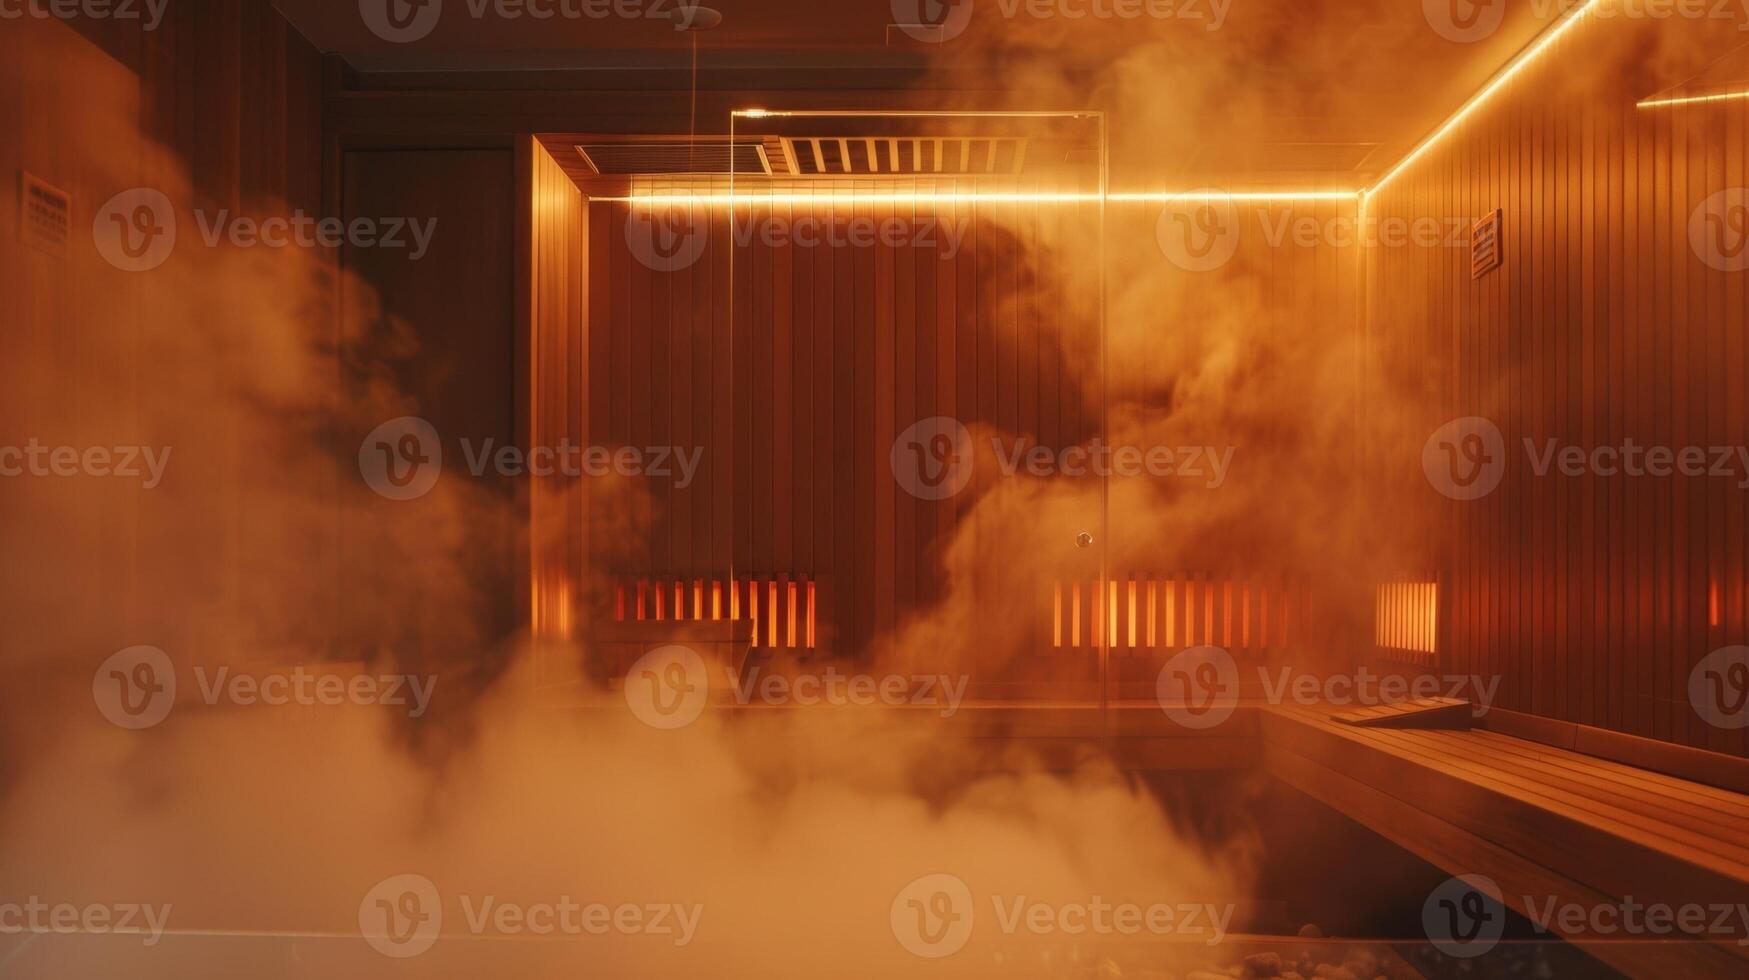 vapor creciente desde el infrarrojo sauna mientras un de difusores dispersa fragante aromas a lo largo de el habitación. foto